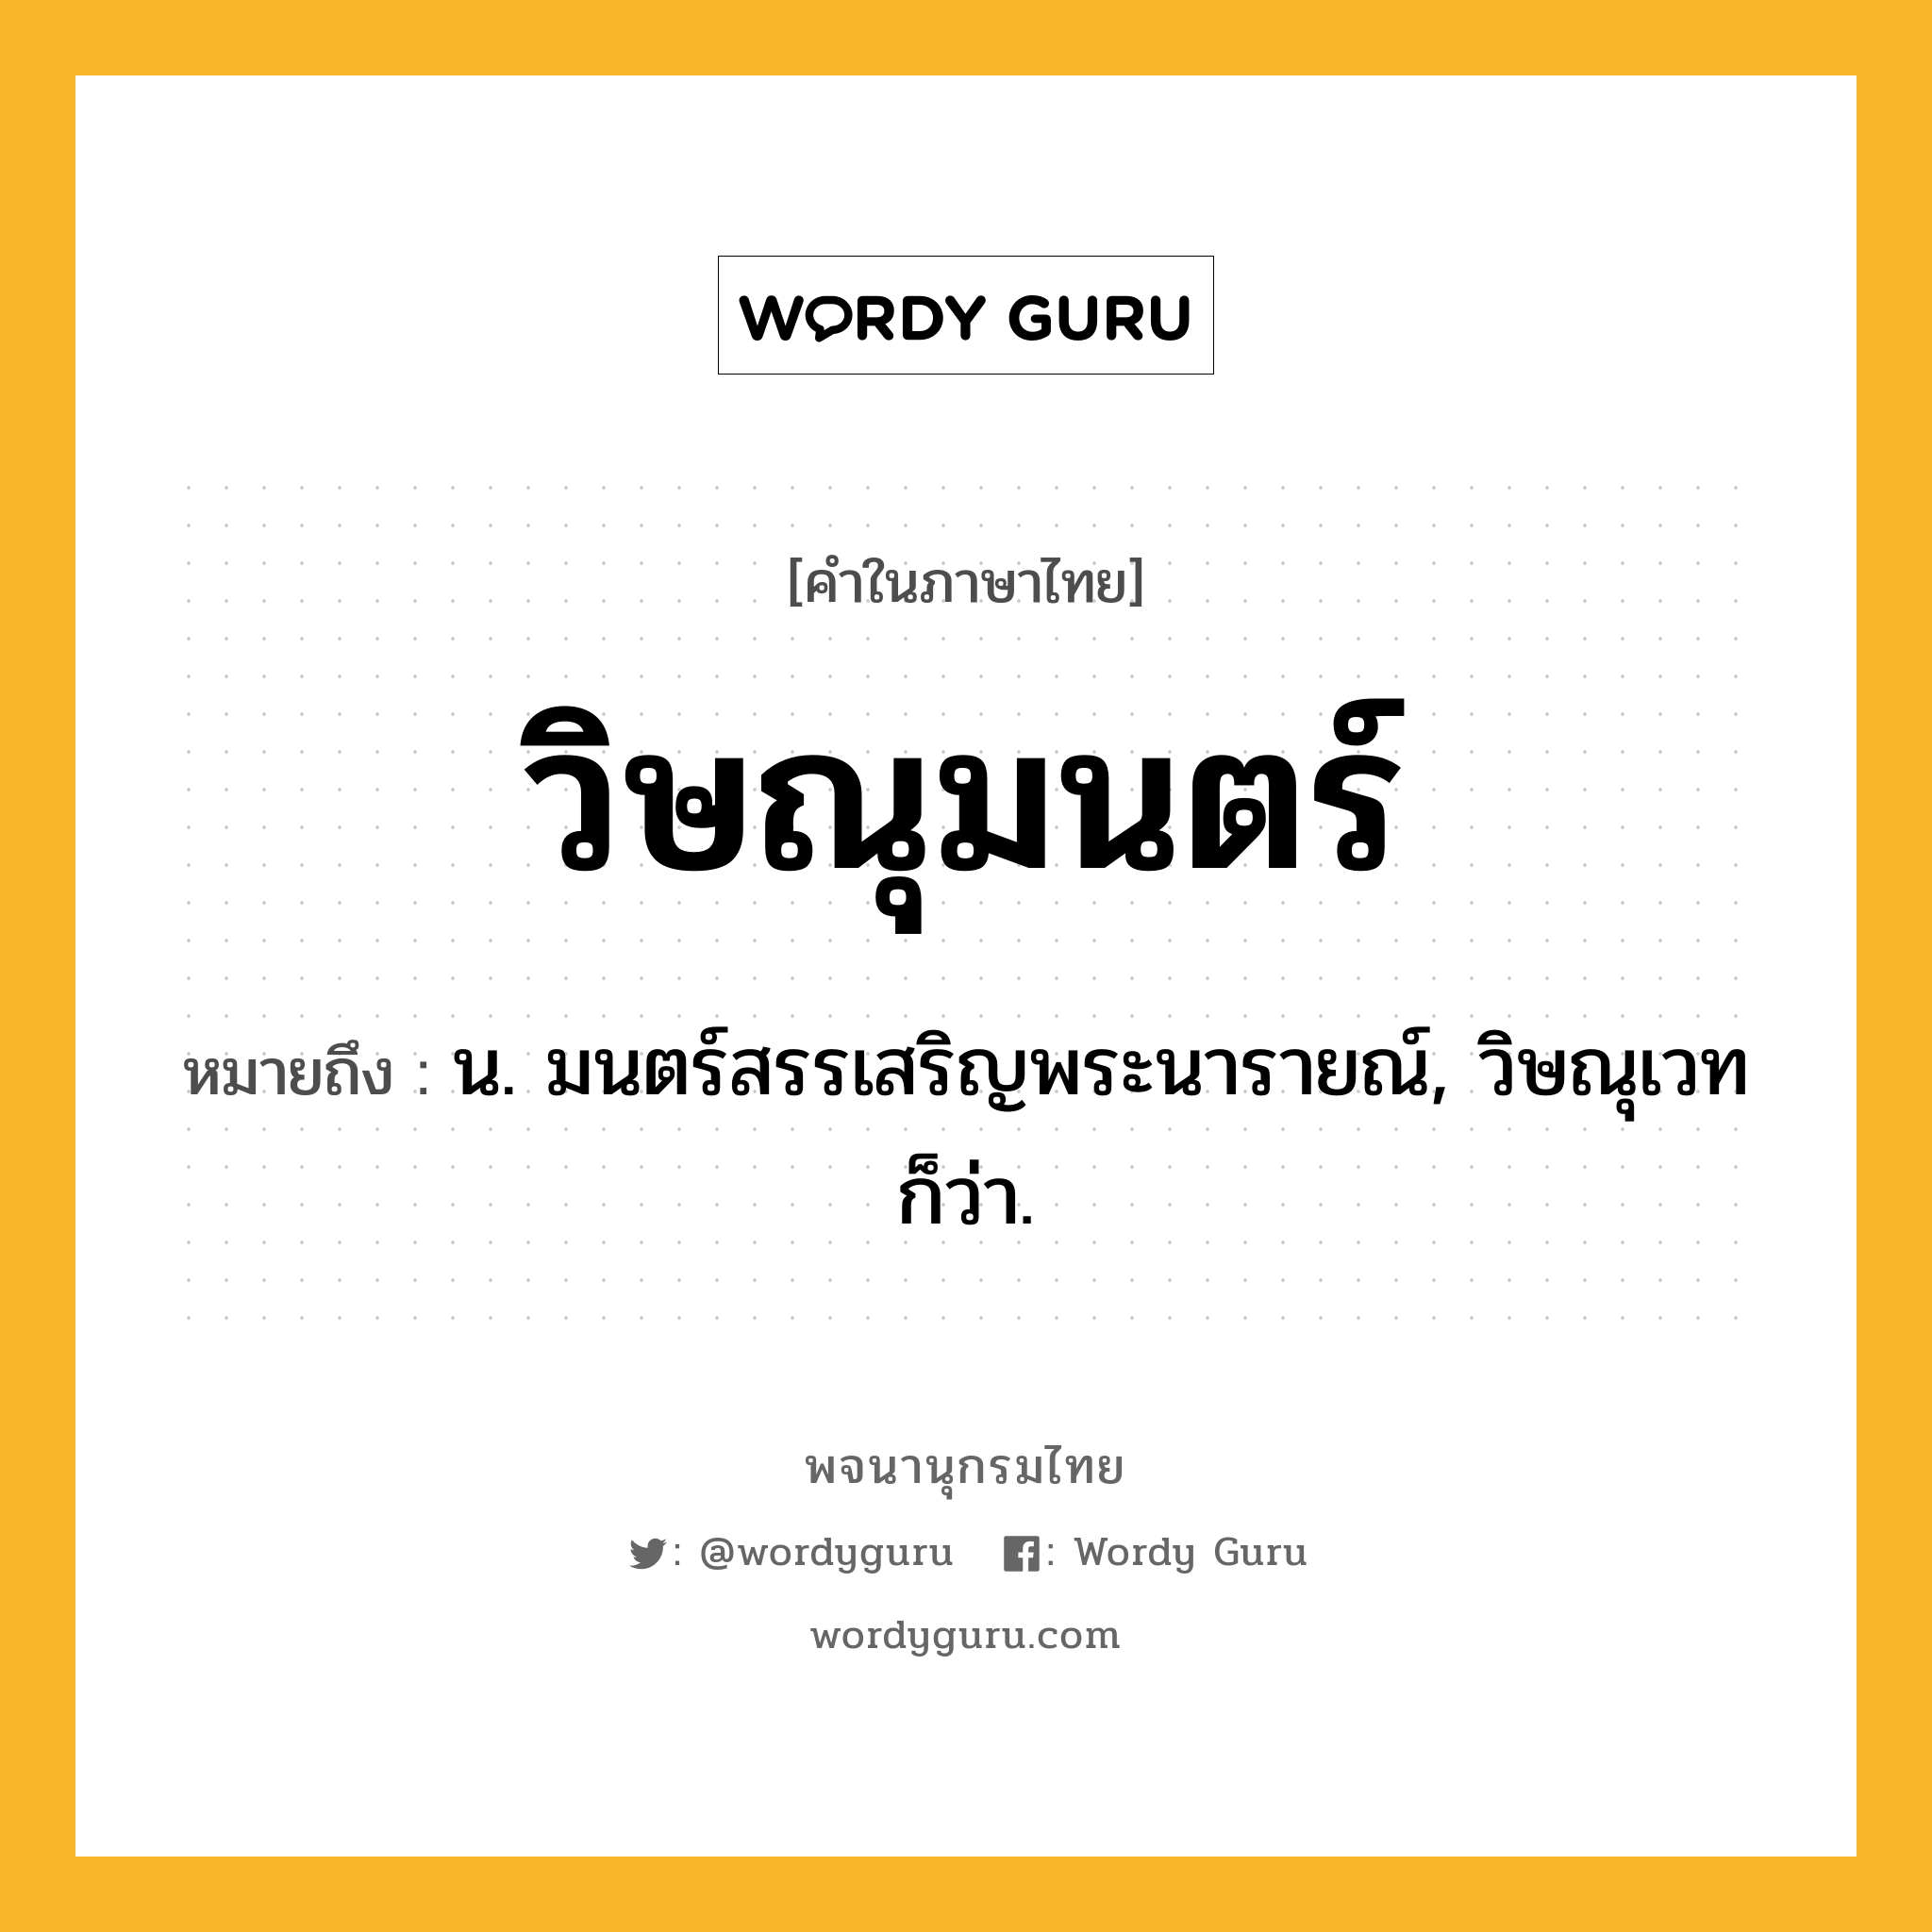 วิษณุมนตร์ ความหมาย หมายถึงอะไร?, คำในภาษาไทย วิษณุมนตร์ หมายถึง น. มนตร์สรรเสริญพระนารายณ์, วิษณุเวท ก็ว่า.